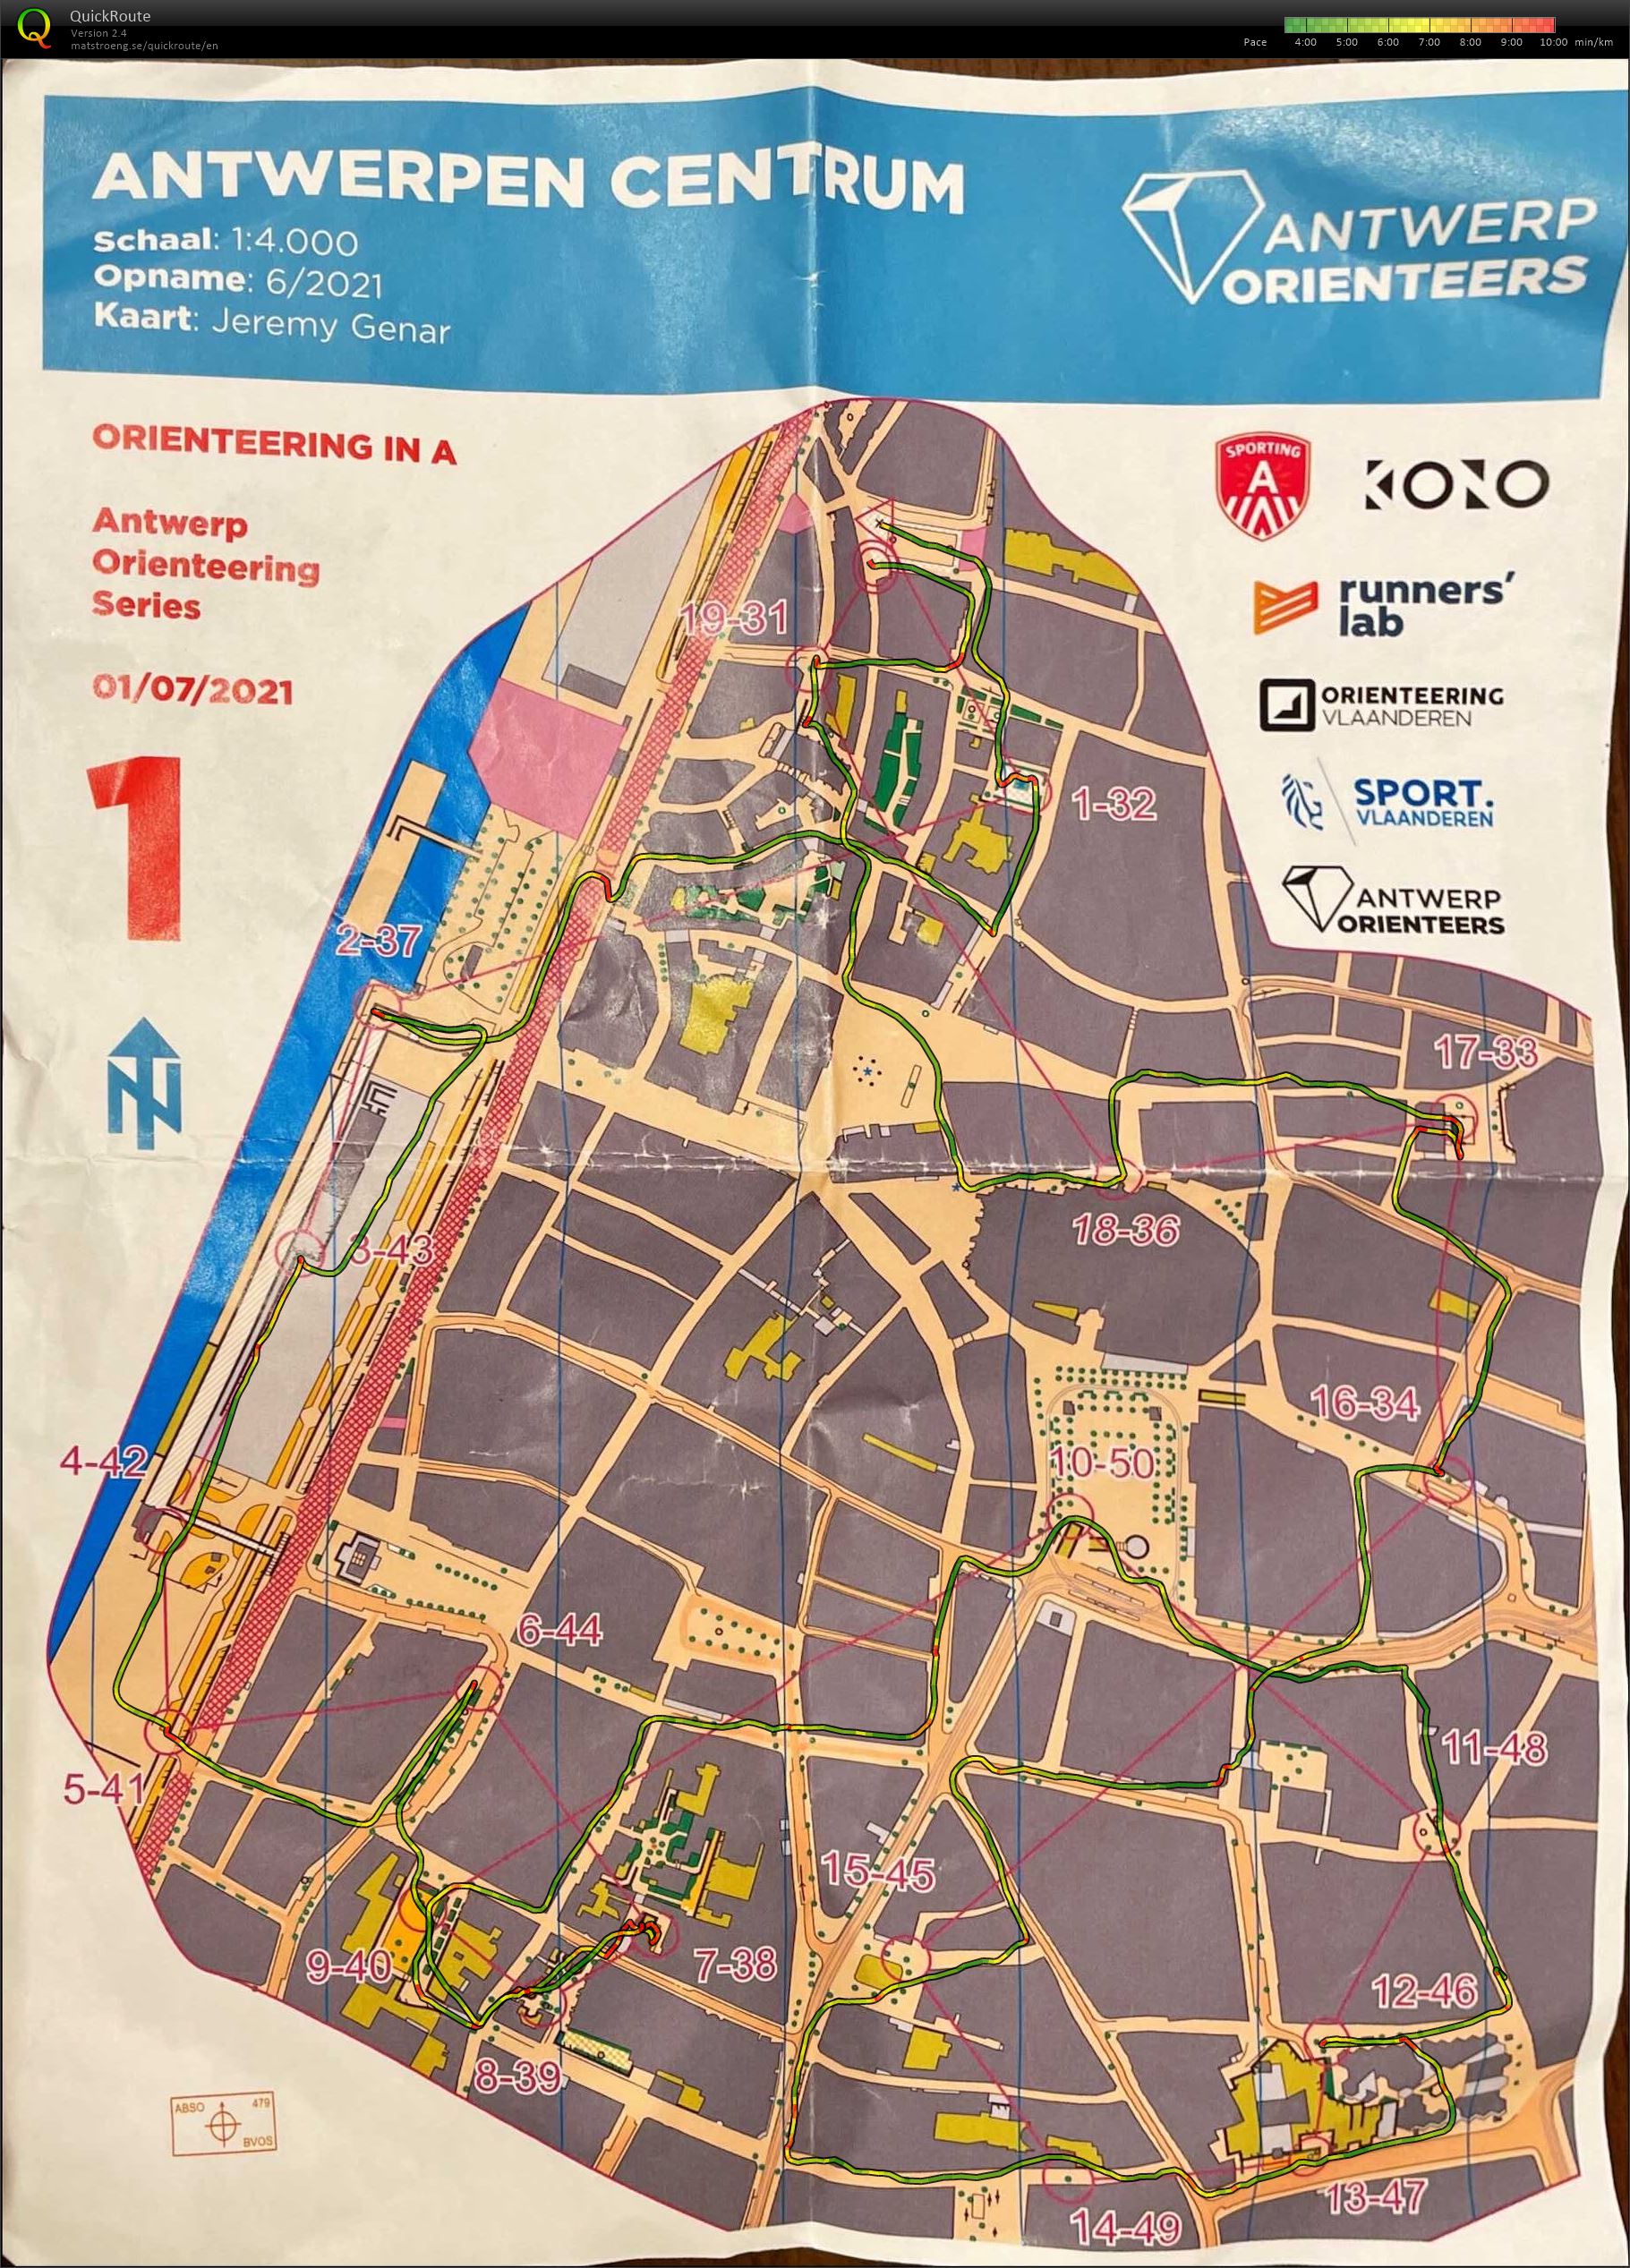 Antwerp Orienteering Series - Antwerpen Centrum - 5K (01-07-2021)